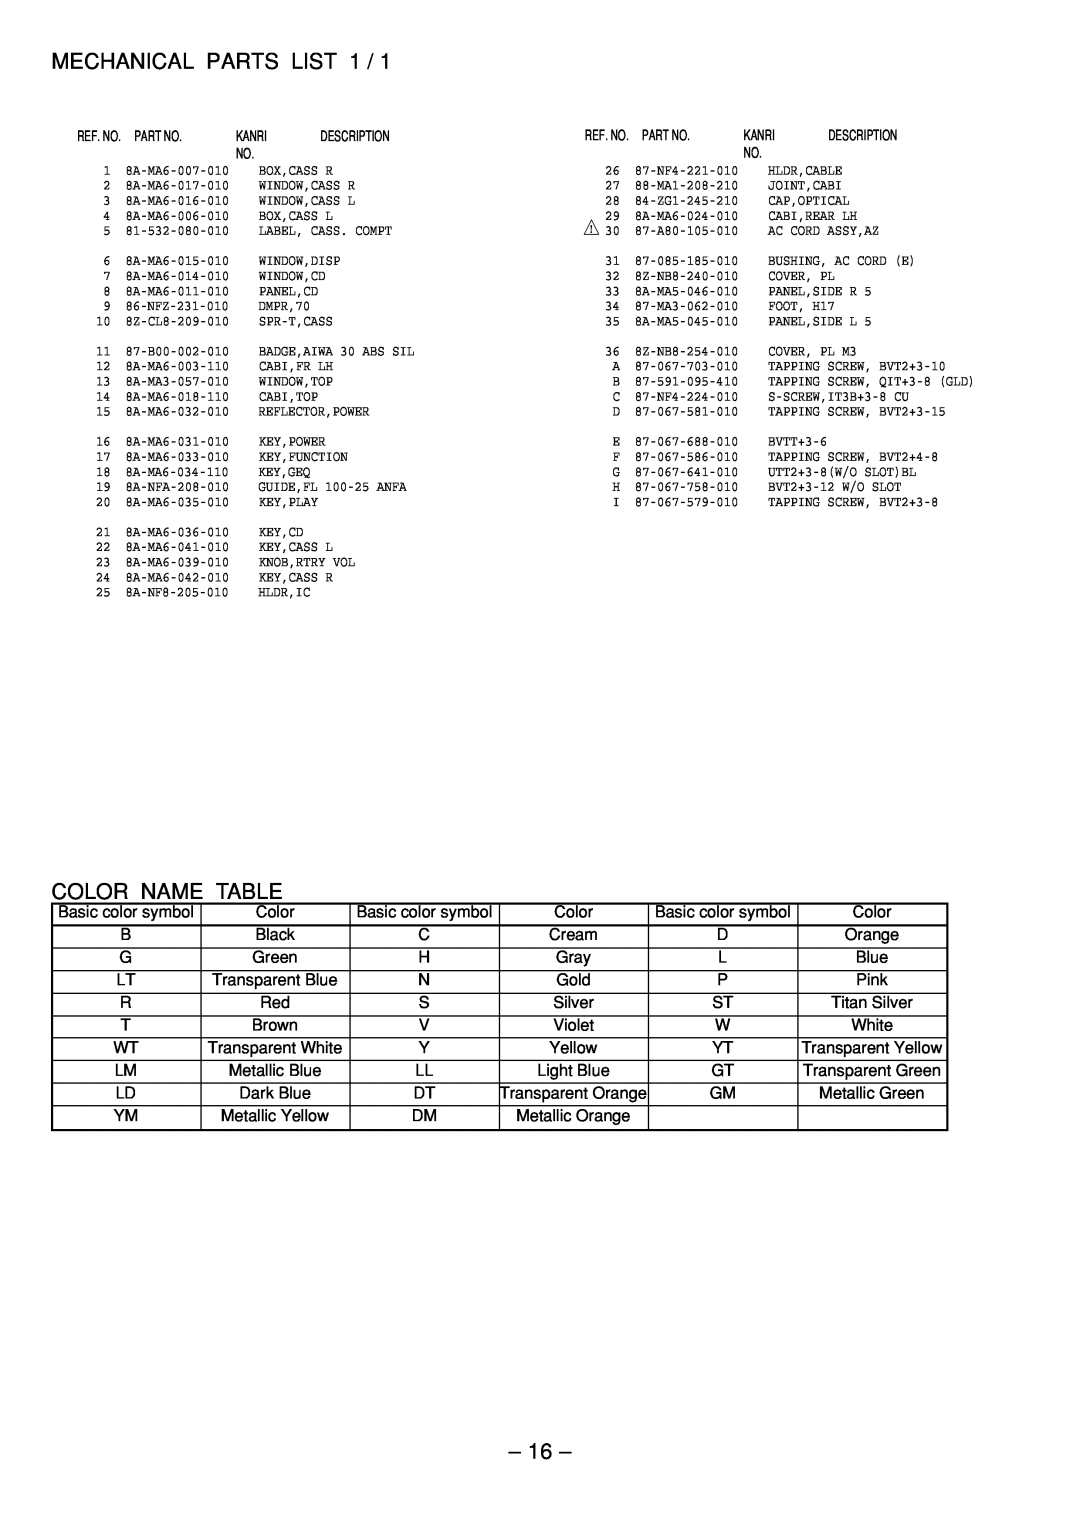 Aiwa Z-L200 service manual Mechanical Parts List, Color Name Table 